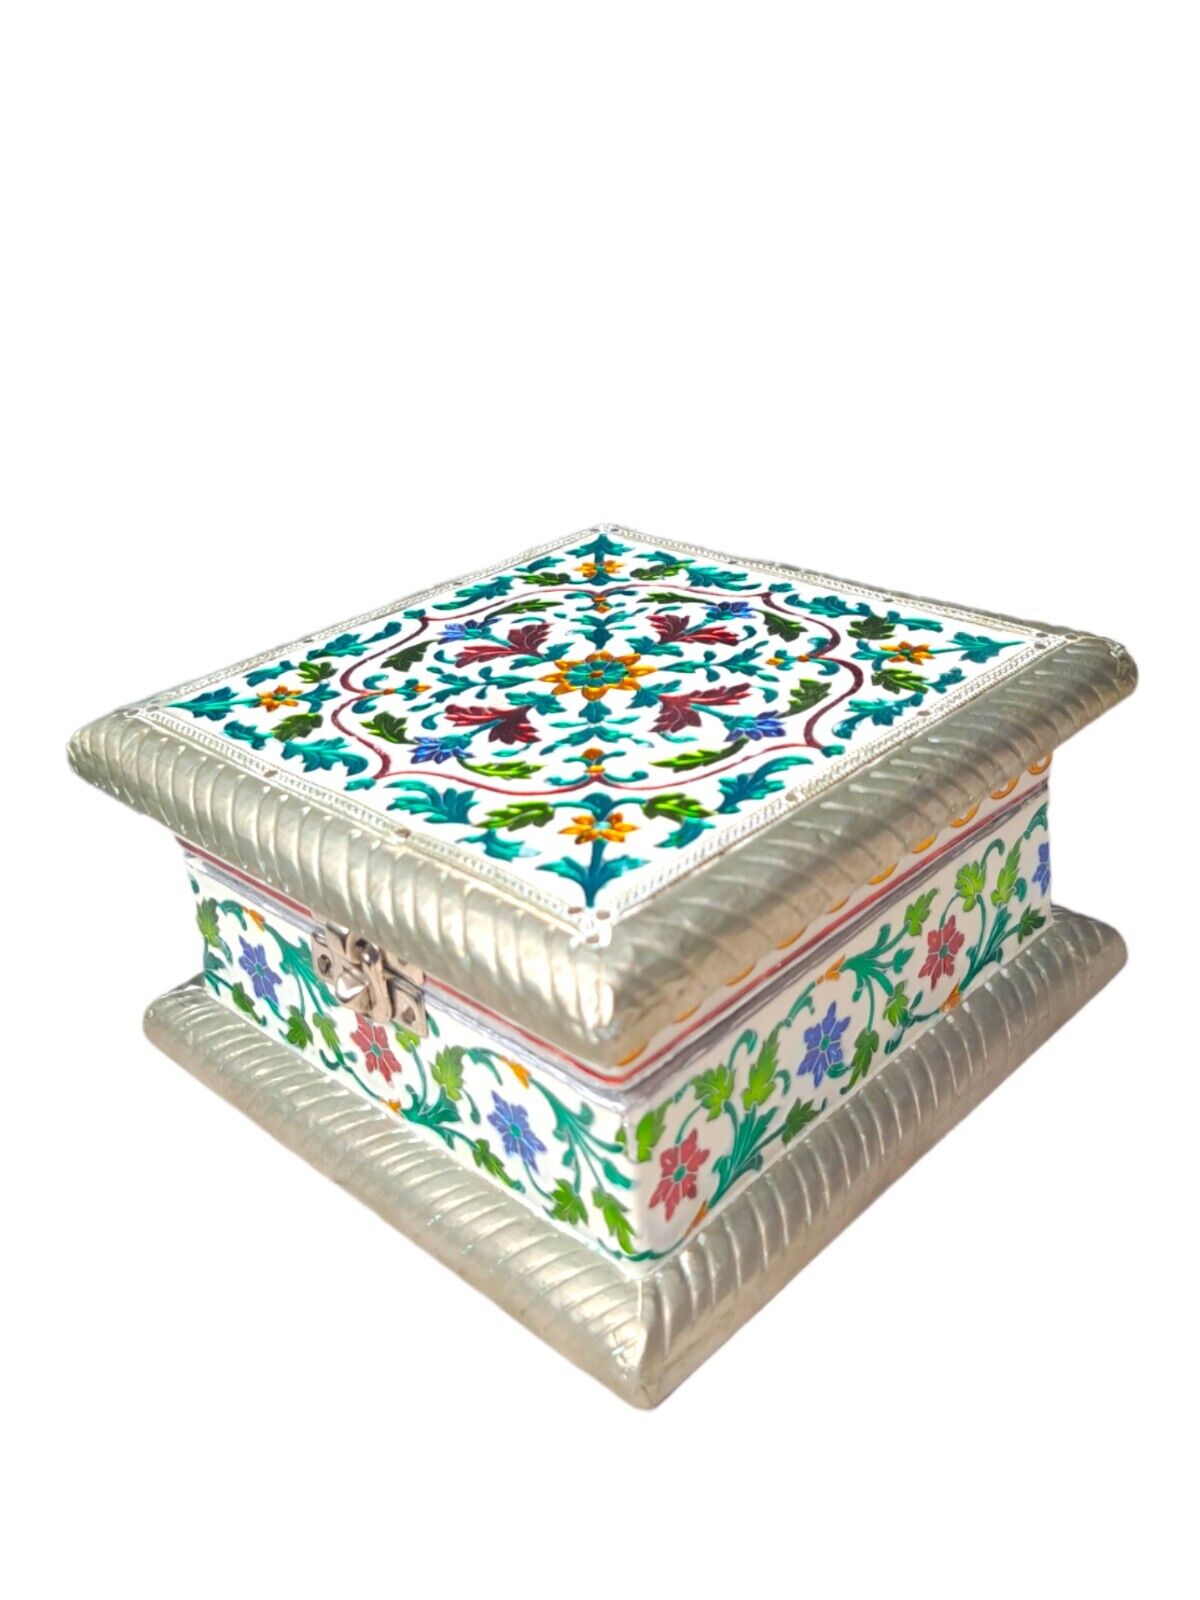 Vintage Enamel Embellished Wood Jewelry Keepsake Box~Multi Jewel Colors~India 